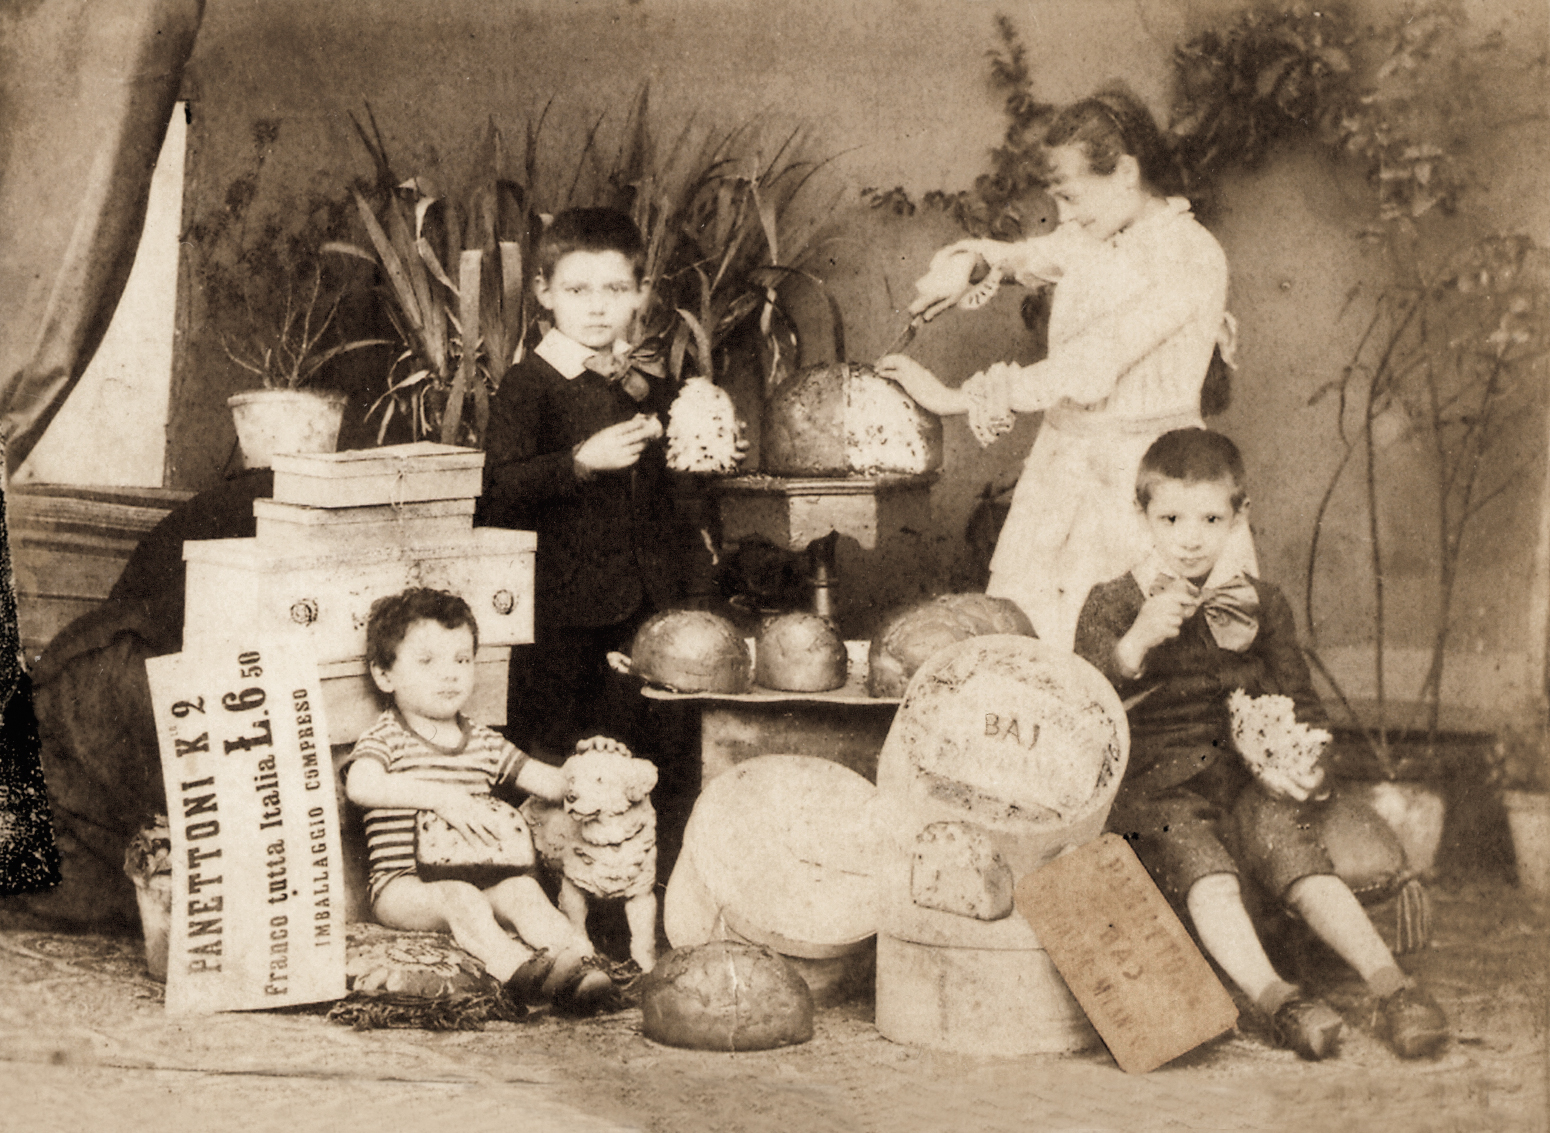 Famiglia Baj con i Panettoni Baj in una foto pubblicitaria di fine '800